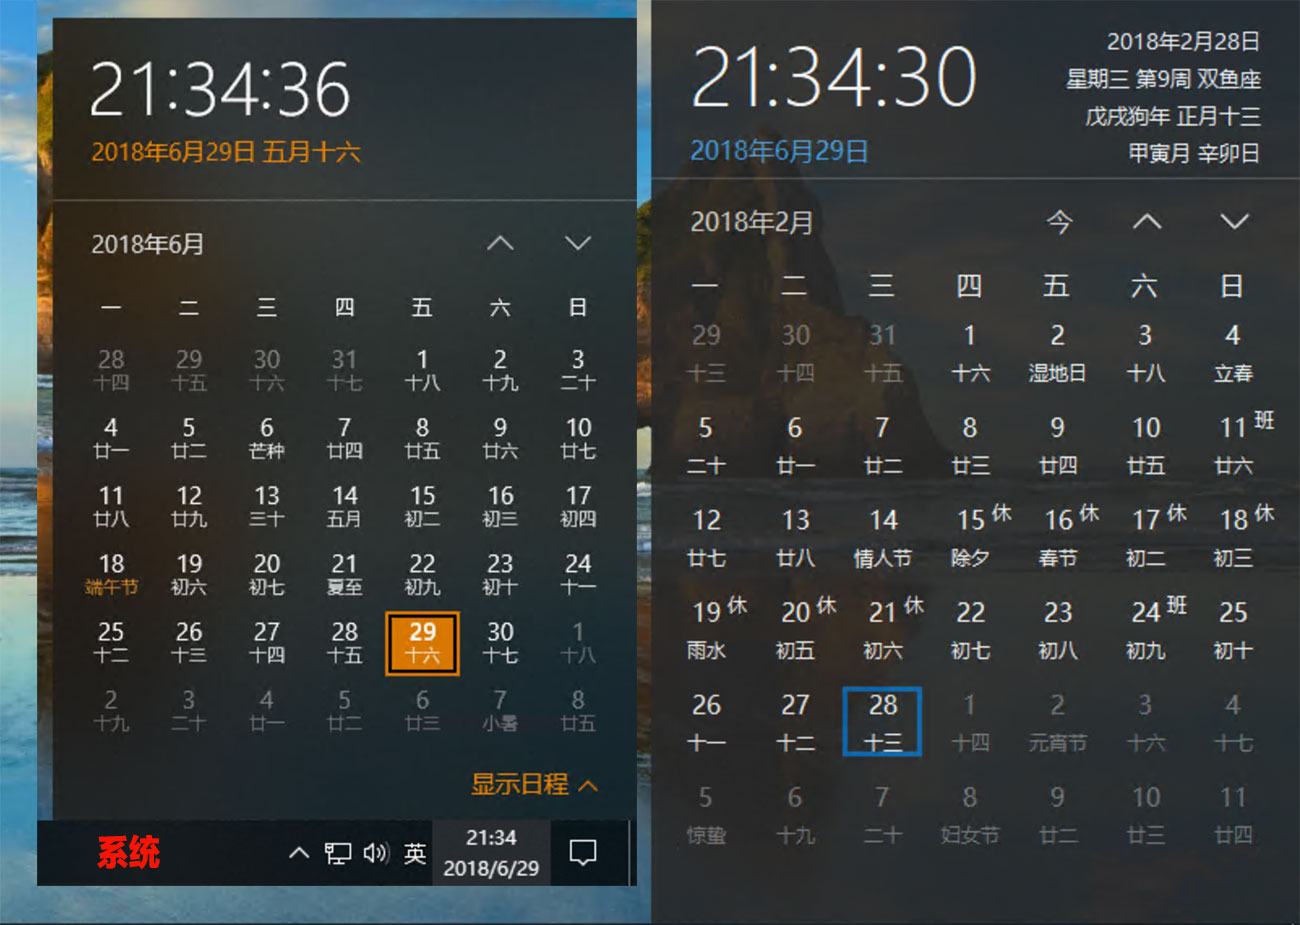 优效日历 - 替换 Windows 10 原生日历，提供年视图、节假日等信息 2